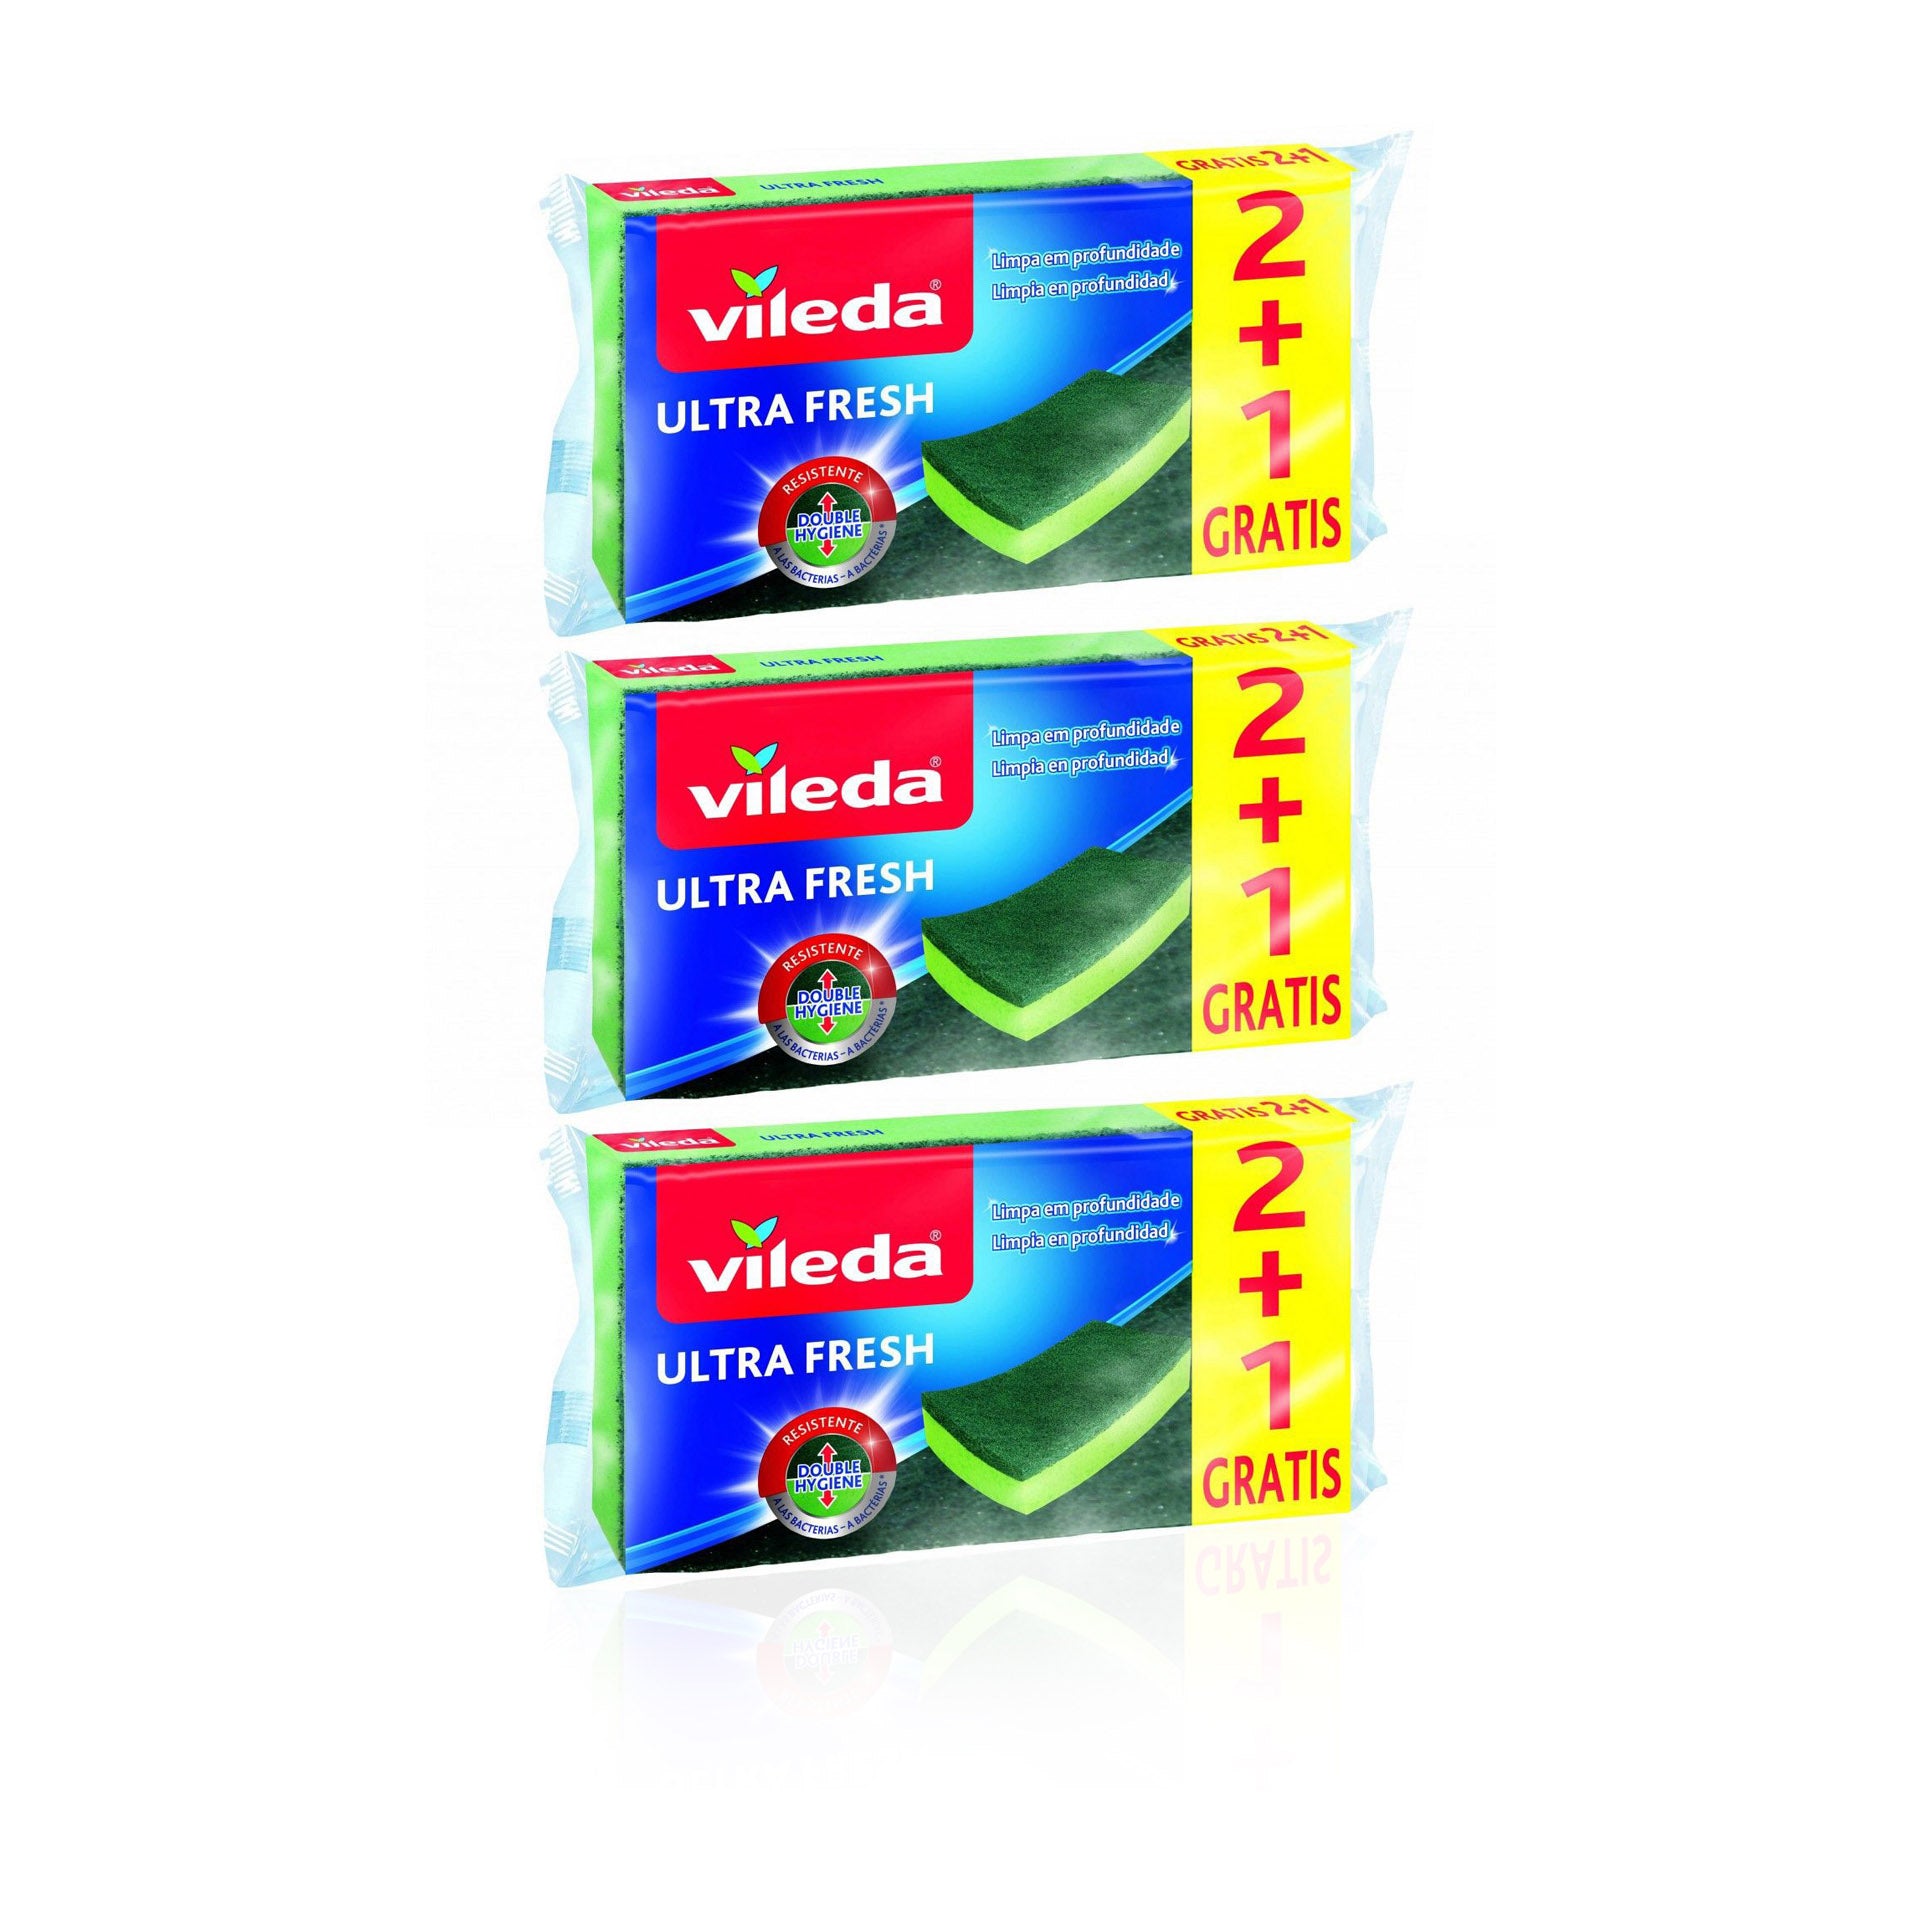 Vileda Ultra Fresh Esfregão Fibra com Esponja Antibactérias 2 + 1  - Pack 3 x (2+1) un